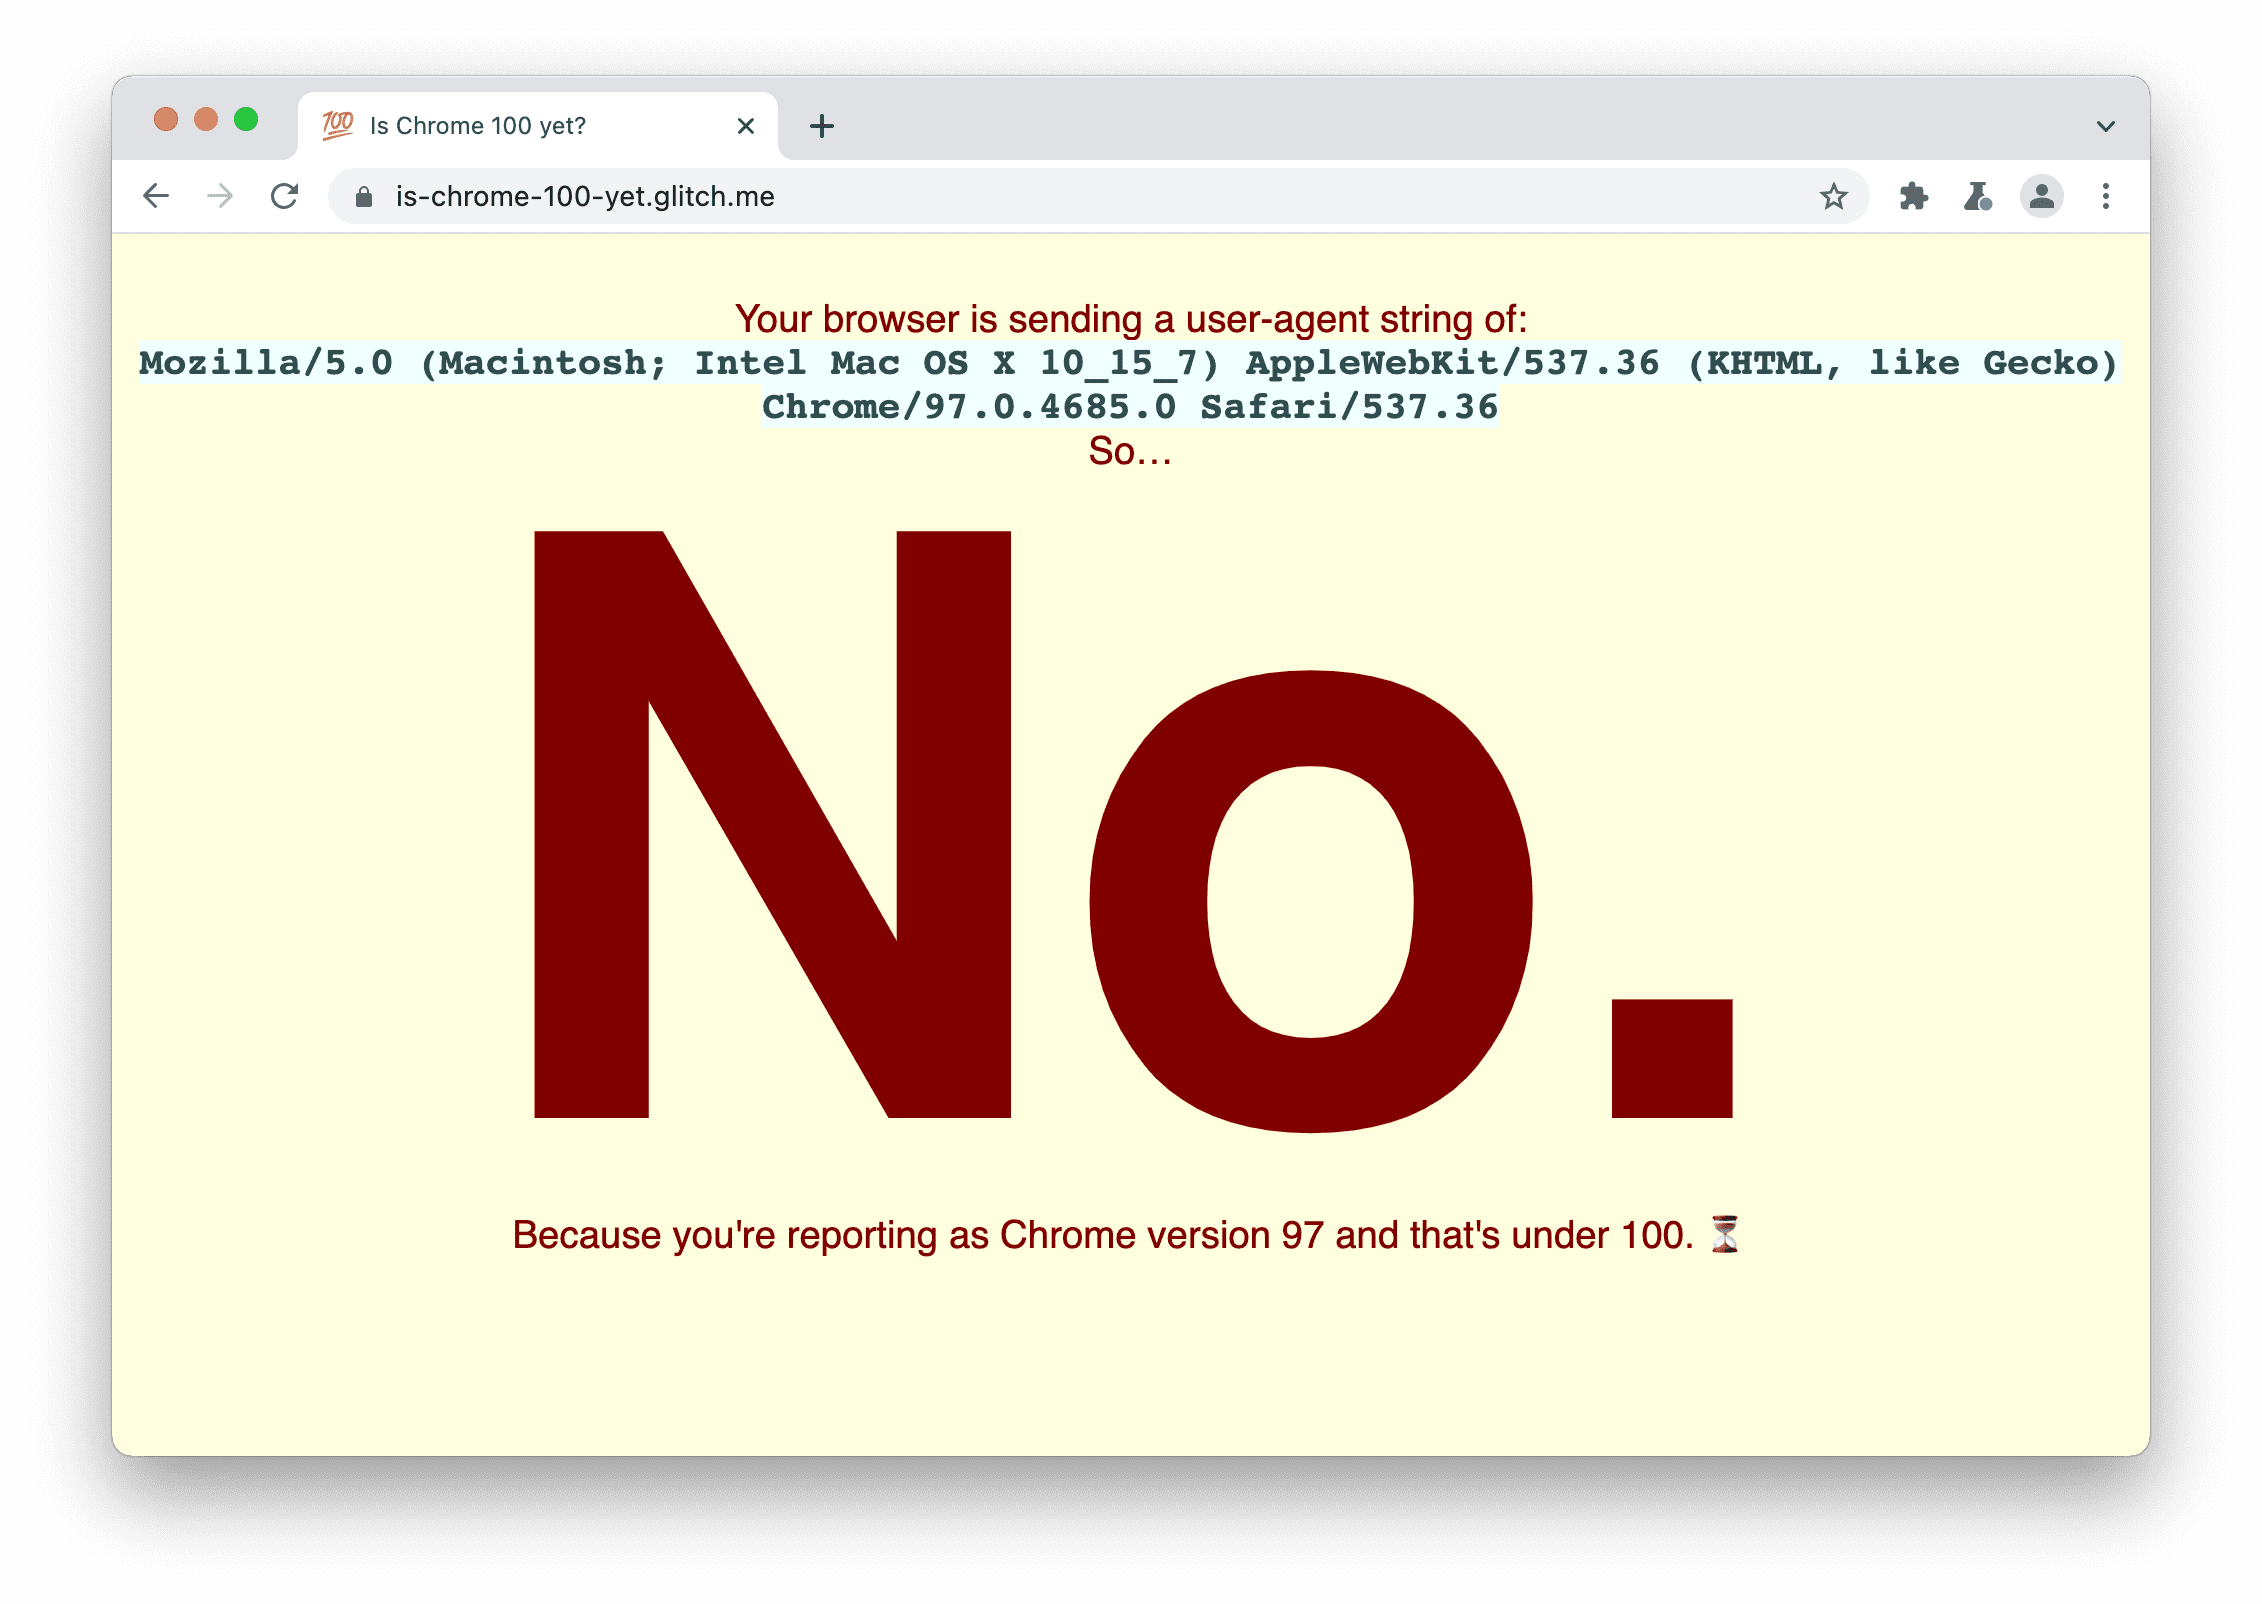 אתר שבודק אם הדפדפן שולח את מחרוזת User-Agent 100. היא מציגה את ההודעה: לא, כי הדיווח שלך הוא כ-Chrome בגרסה 97 והמספר נמוך מ-100.